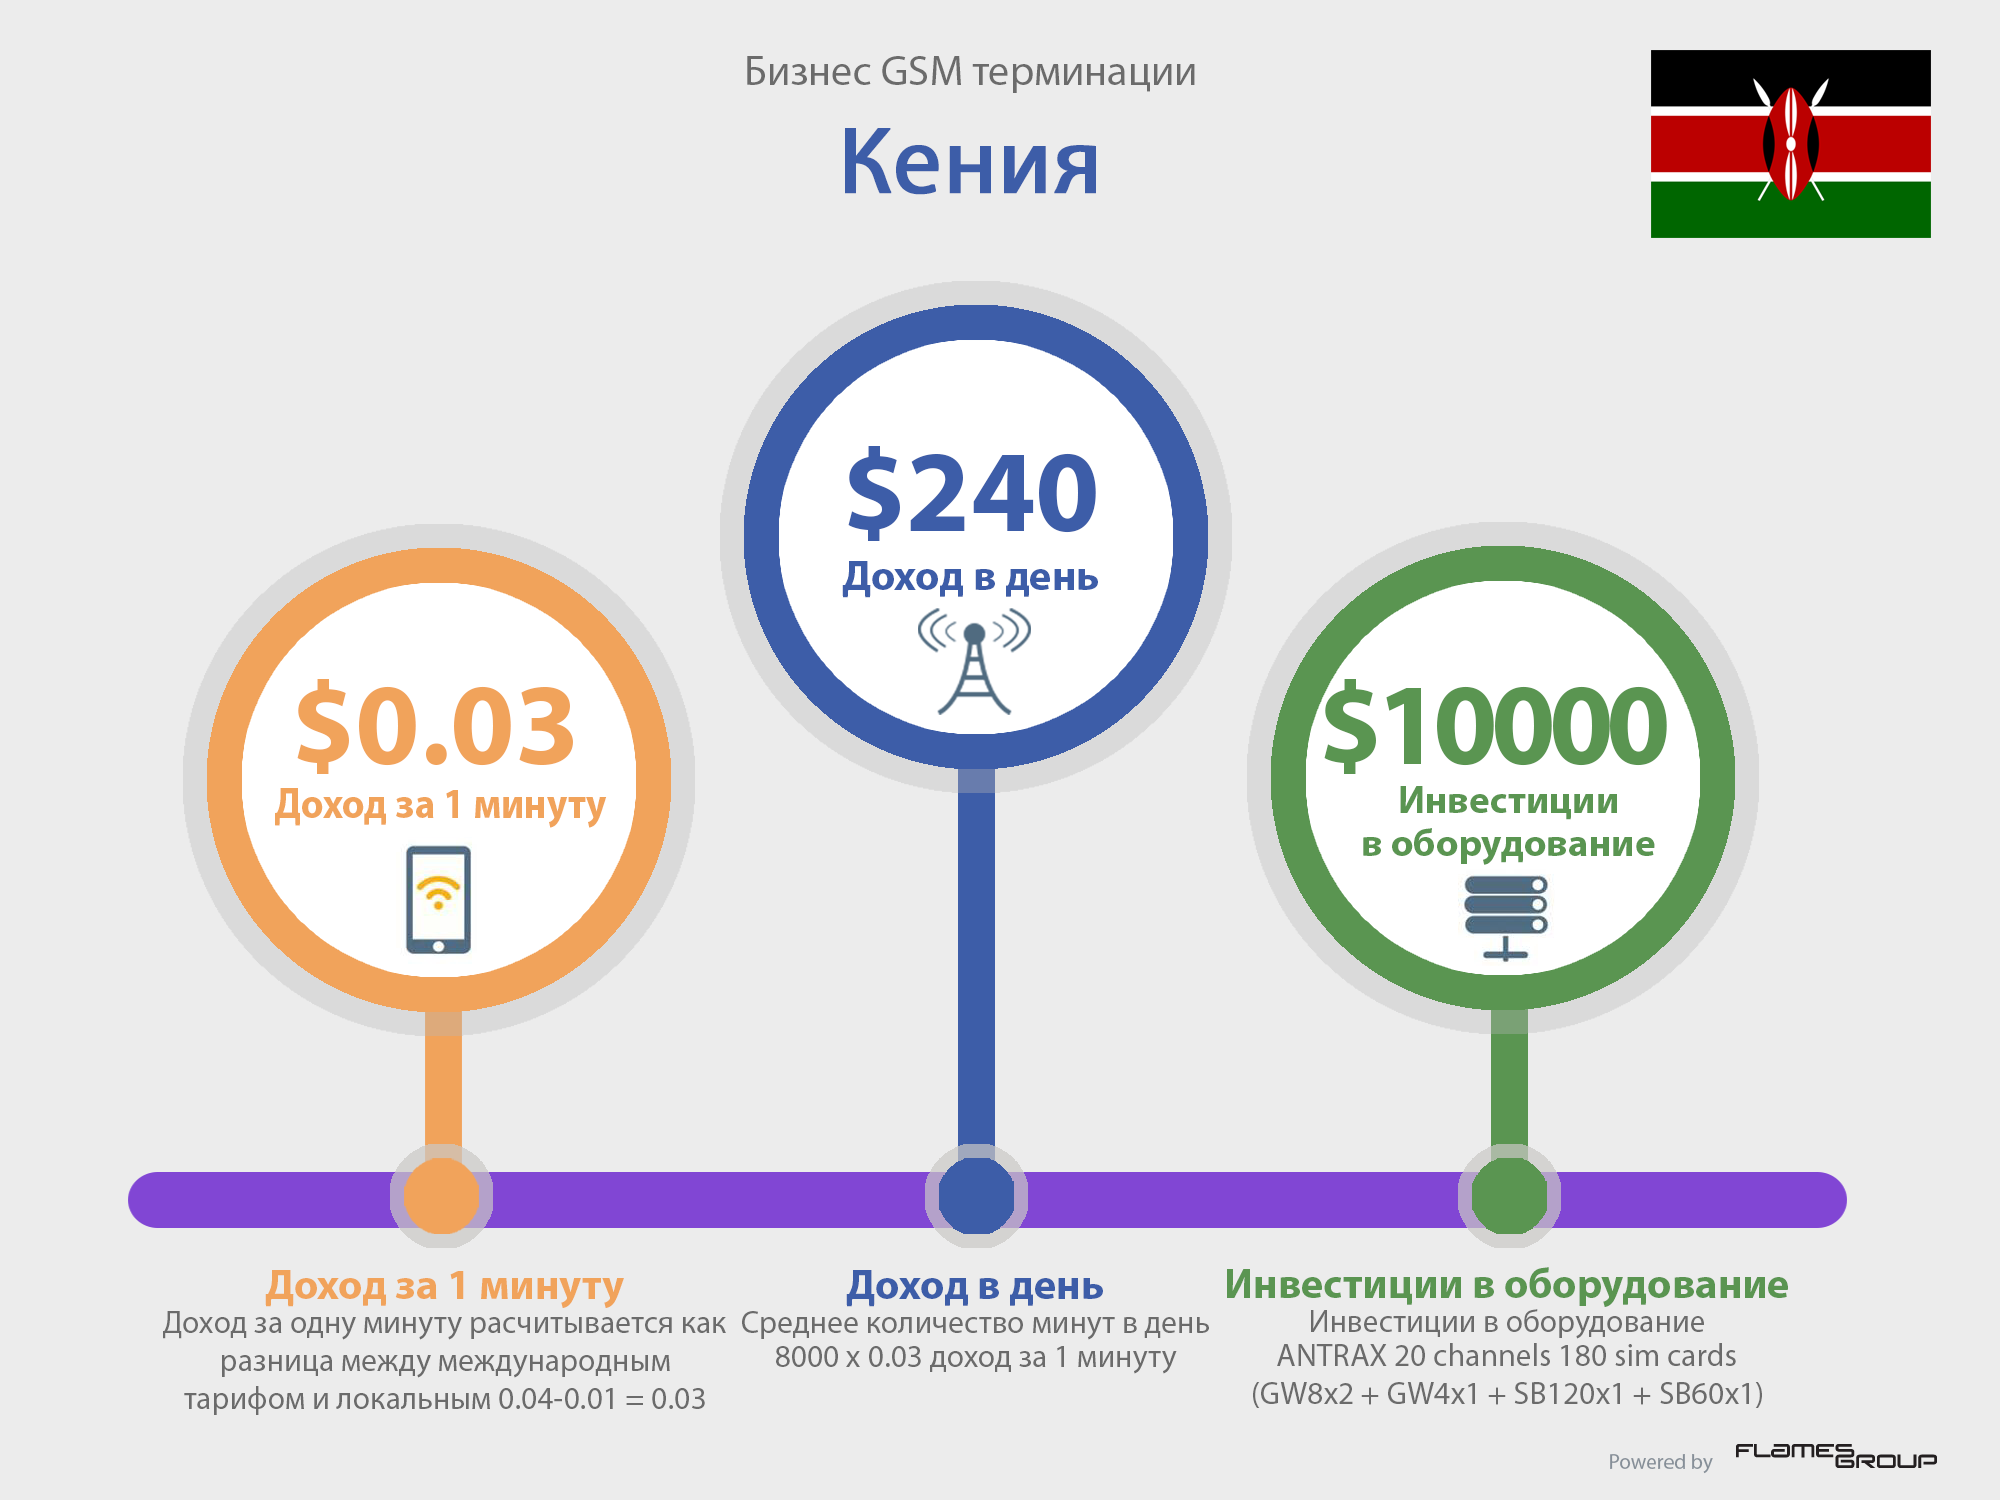 GSM терминация в Кении - Инфографика ANTRAX